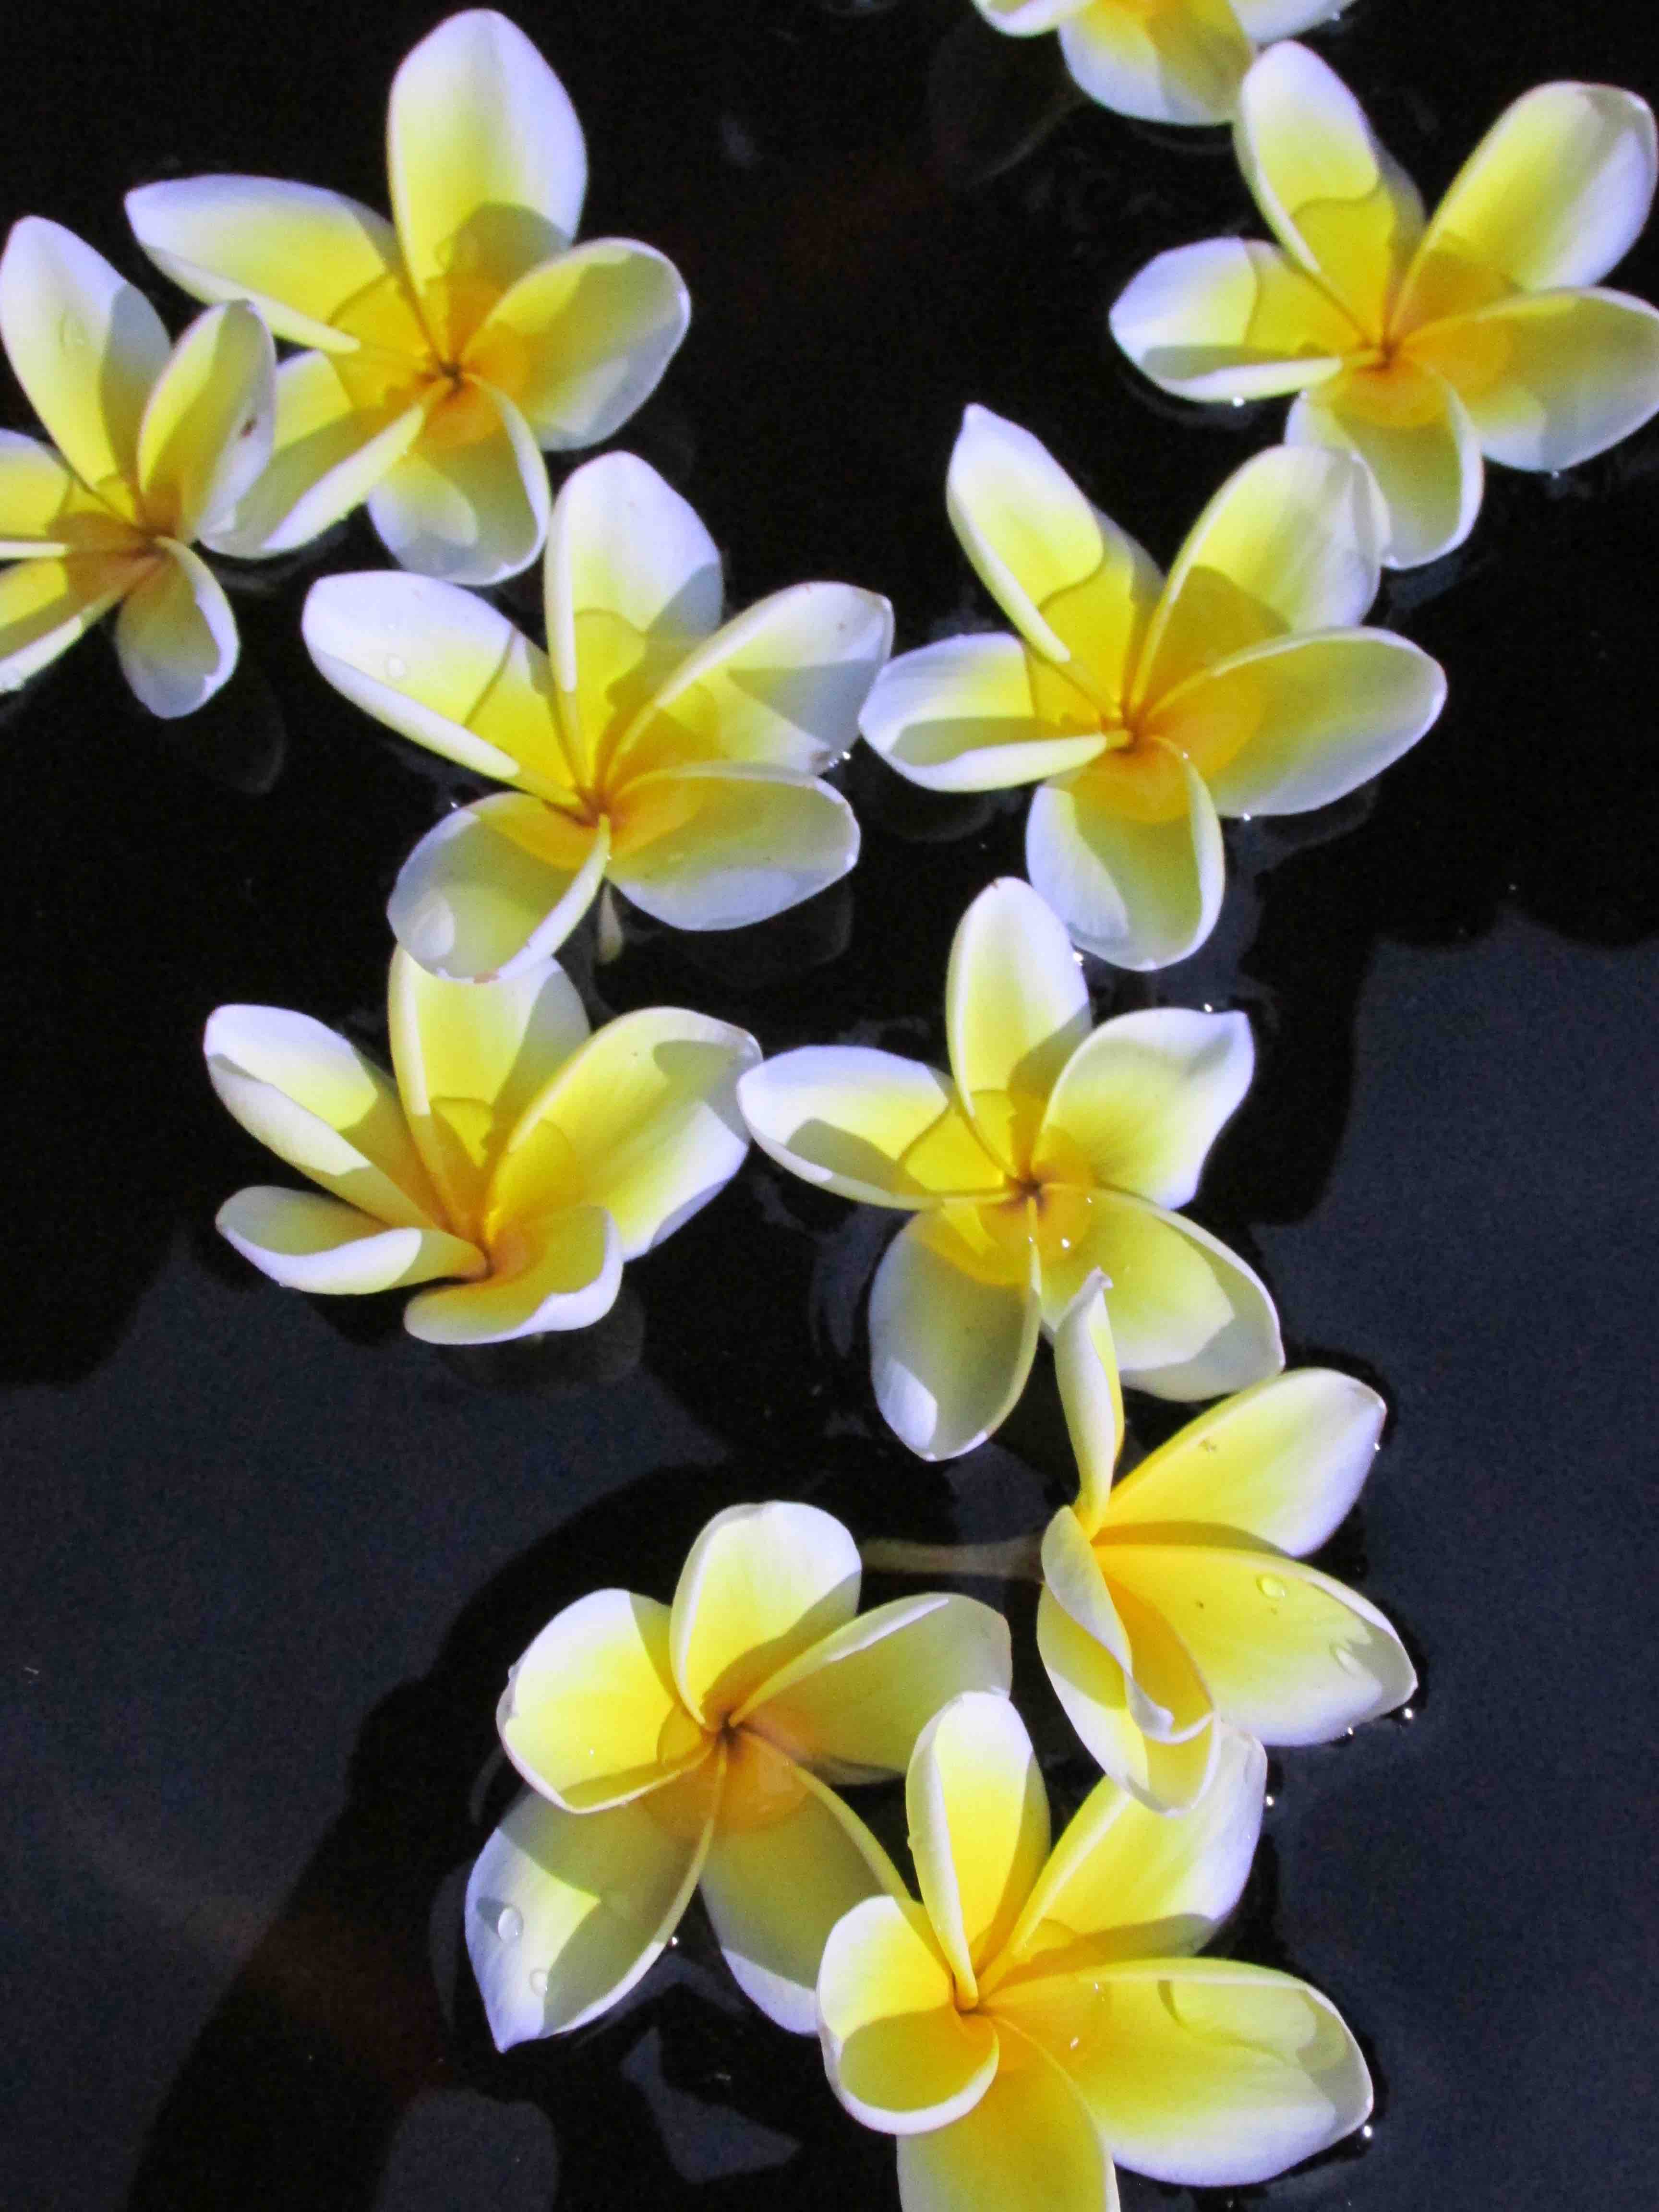 Les fleurs frangipanier représente le dévouement et la dévotion à la culture hindoue